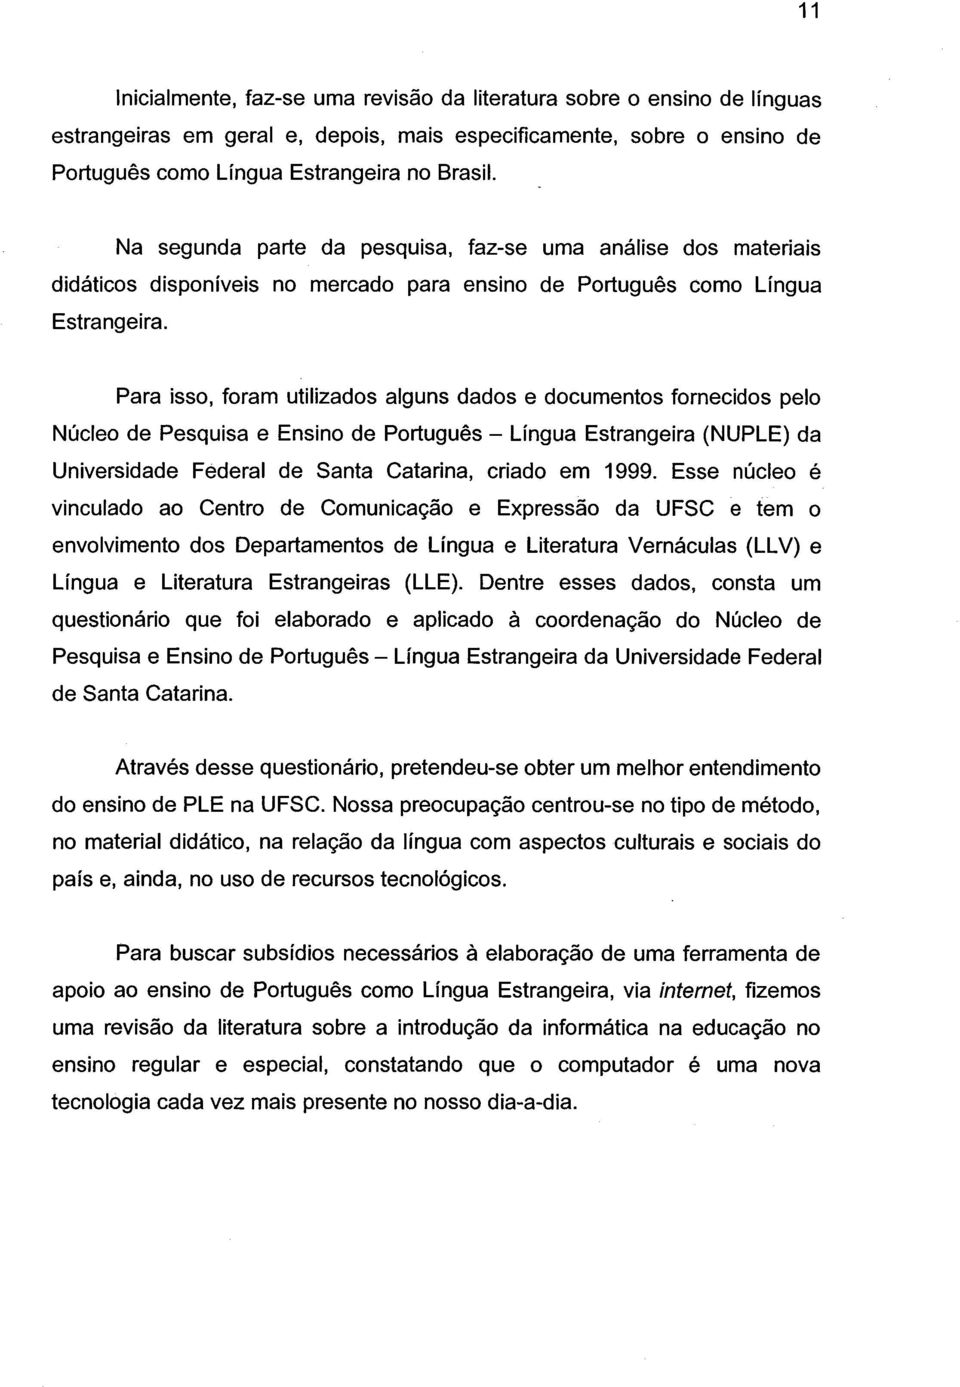 Para isso, foram utilizados alguns dados e documentos fornecidos pelo Núcleo de Pesquisa e Ensino de Português - Língua Estrangeira (NUPLE) da Universidade Federal de Santa Catarina, criado em 1999.